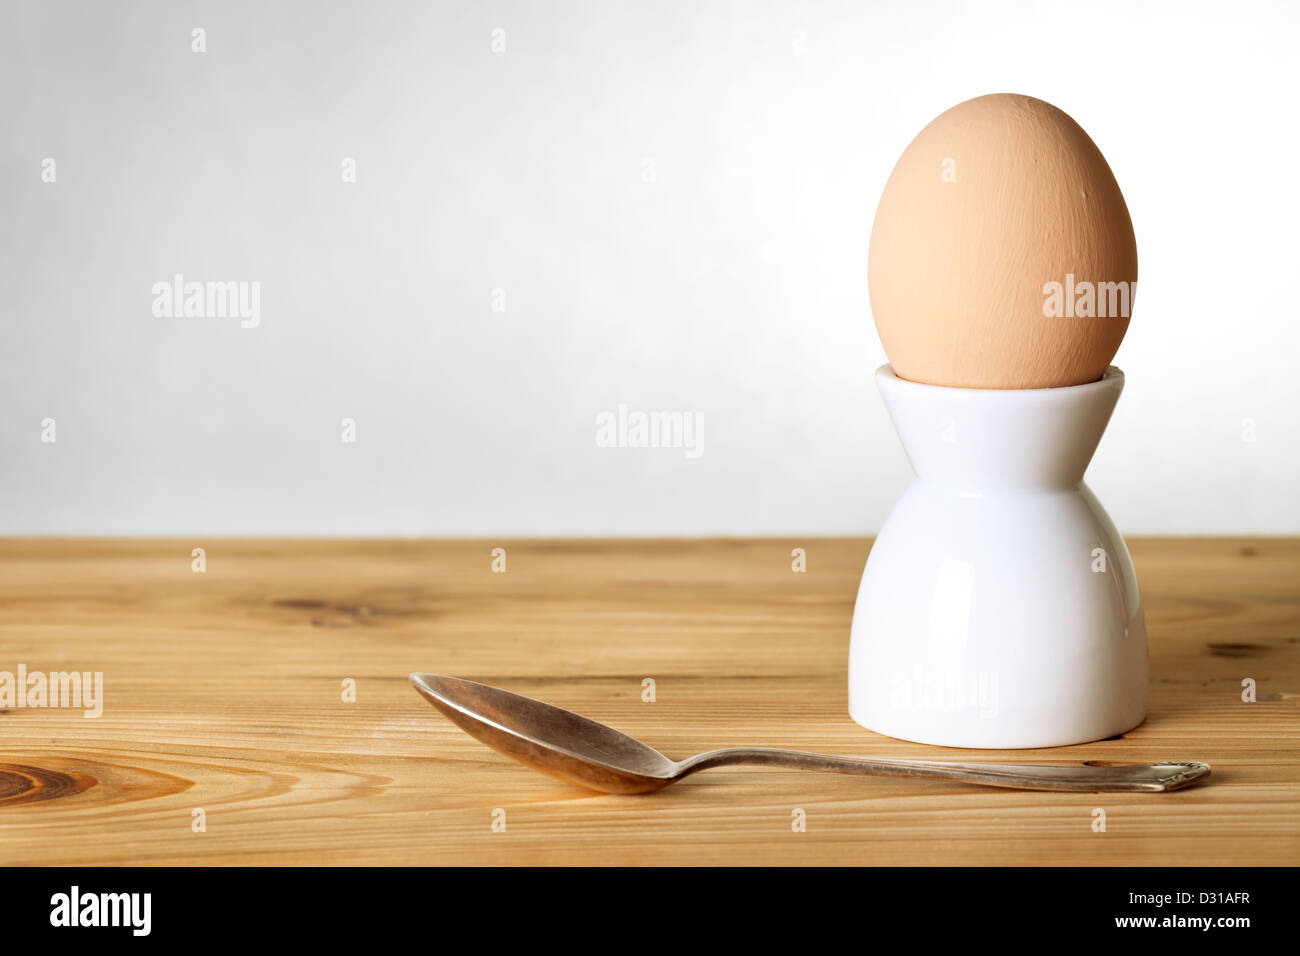 Egg in Egg Holder Stock Photo by ©paulbrighton 15517315